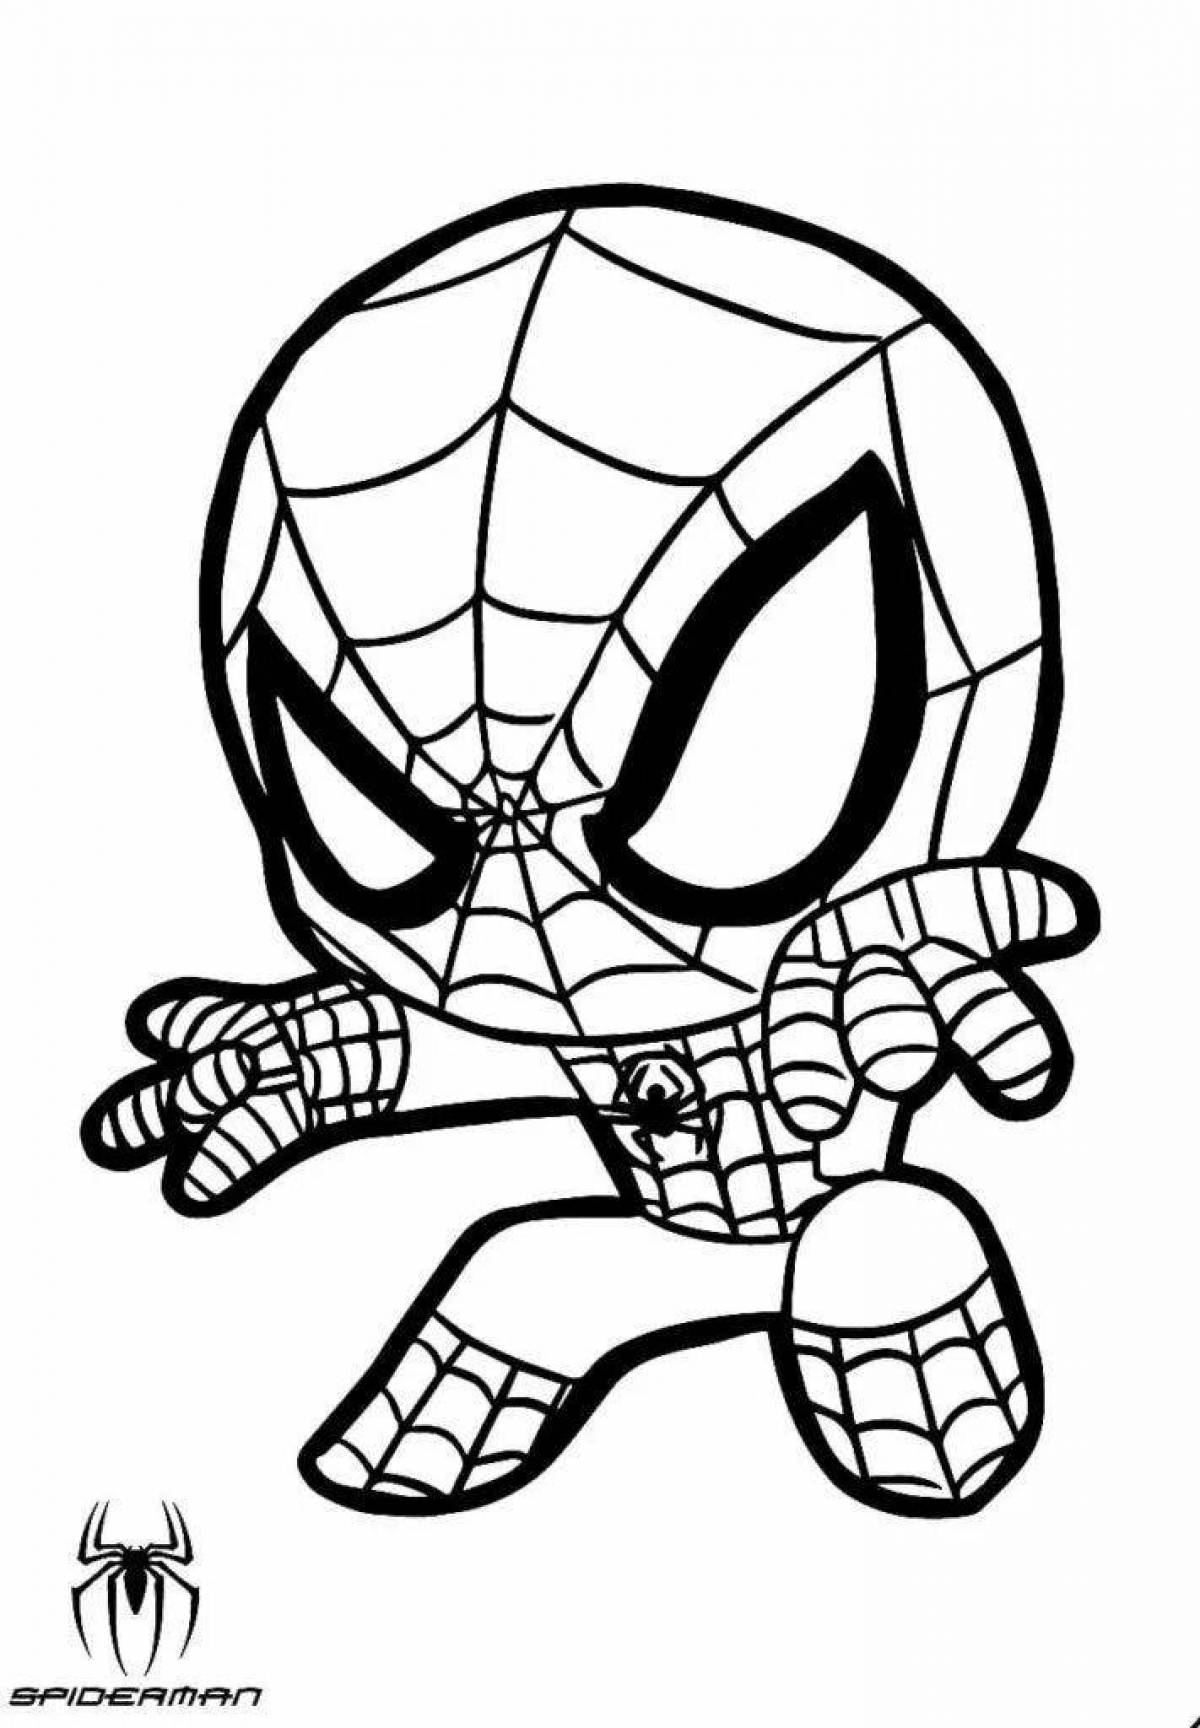 Little spider-man climbing